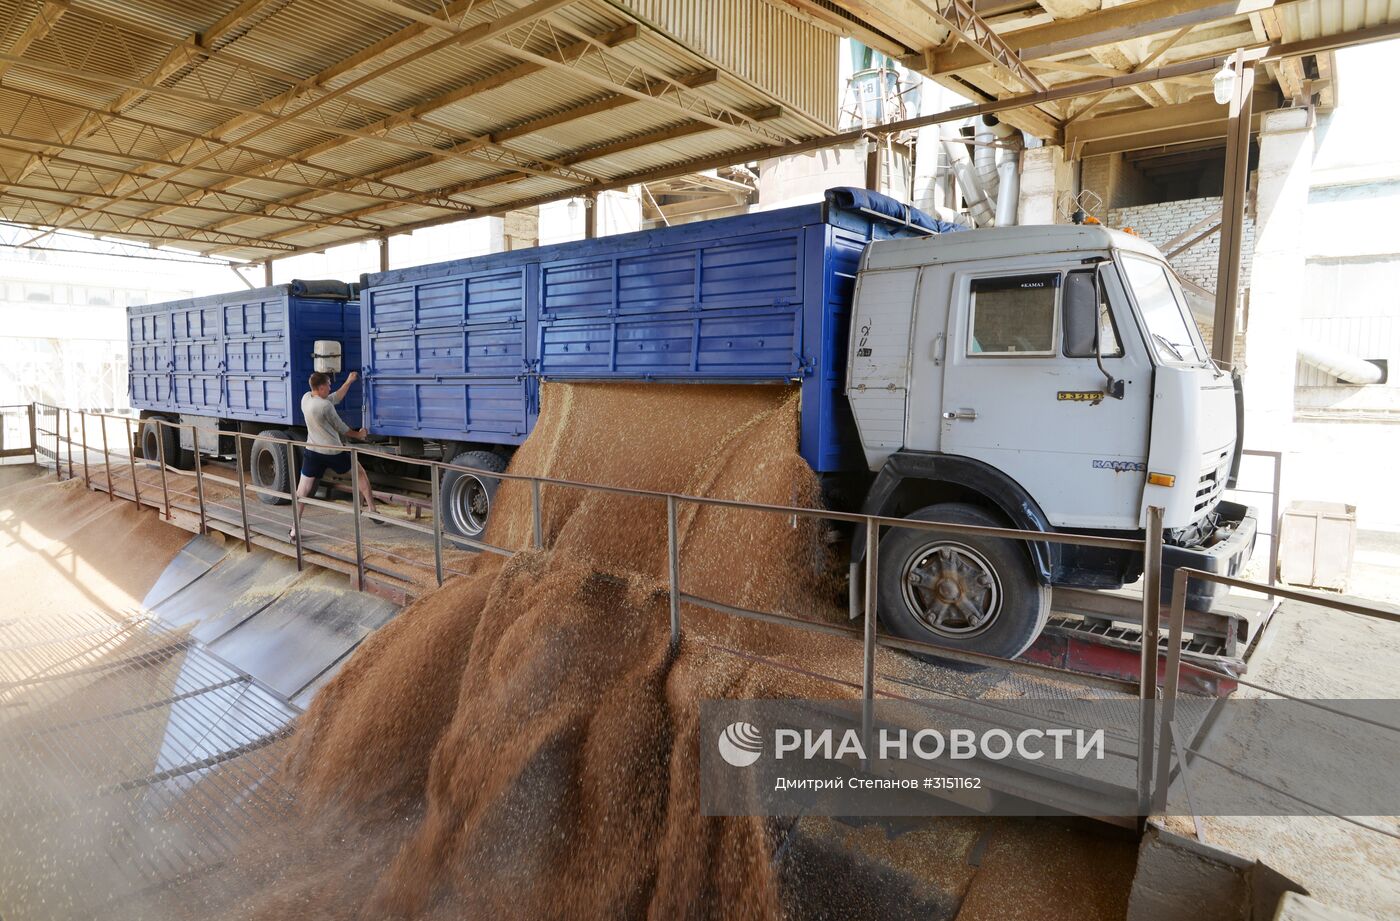 Уборка зерновых в Ставропольском крае